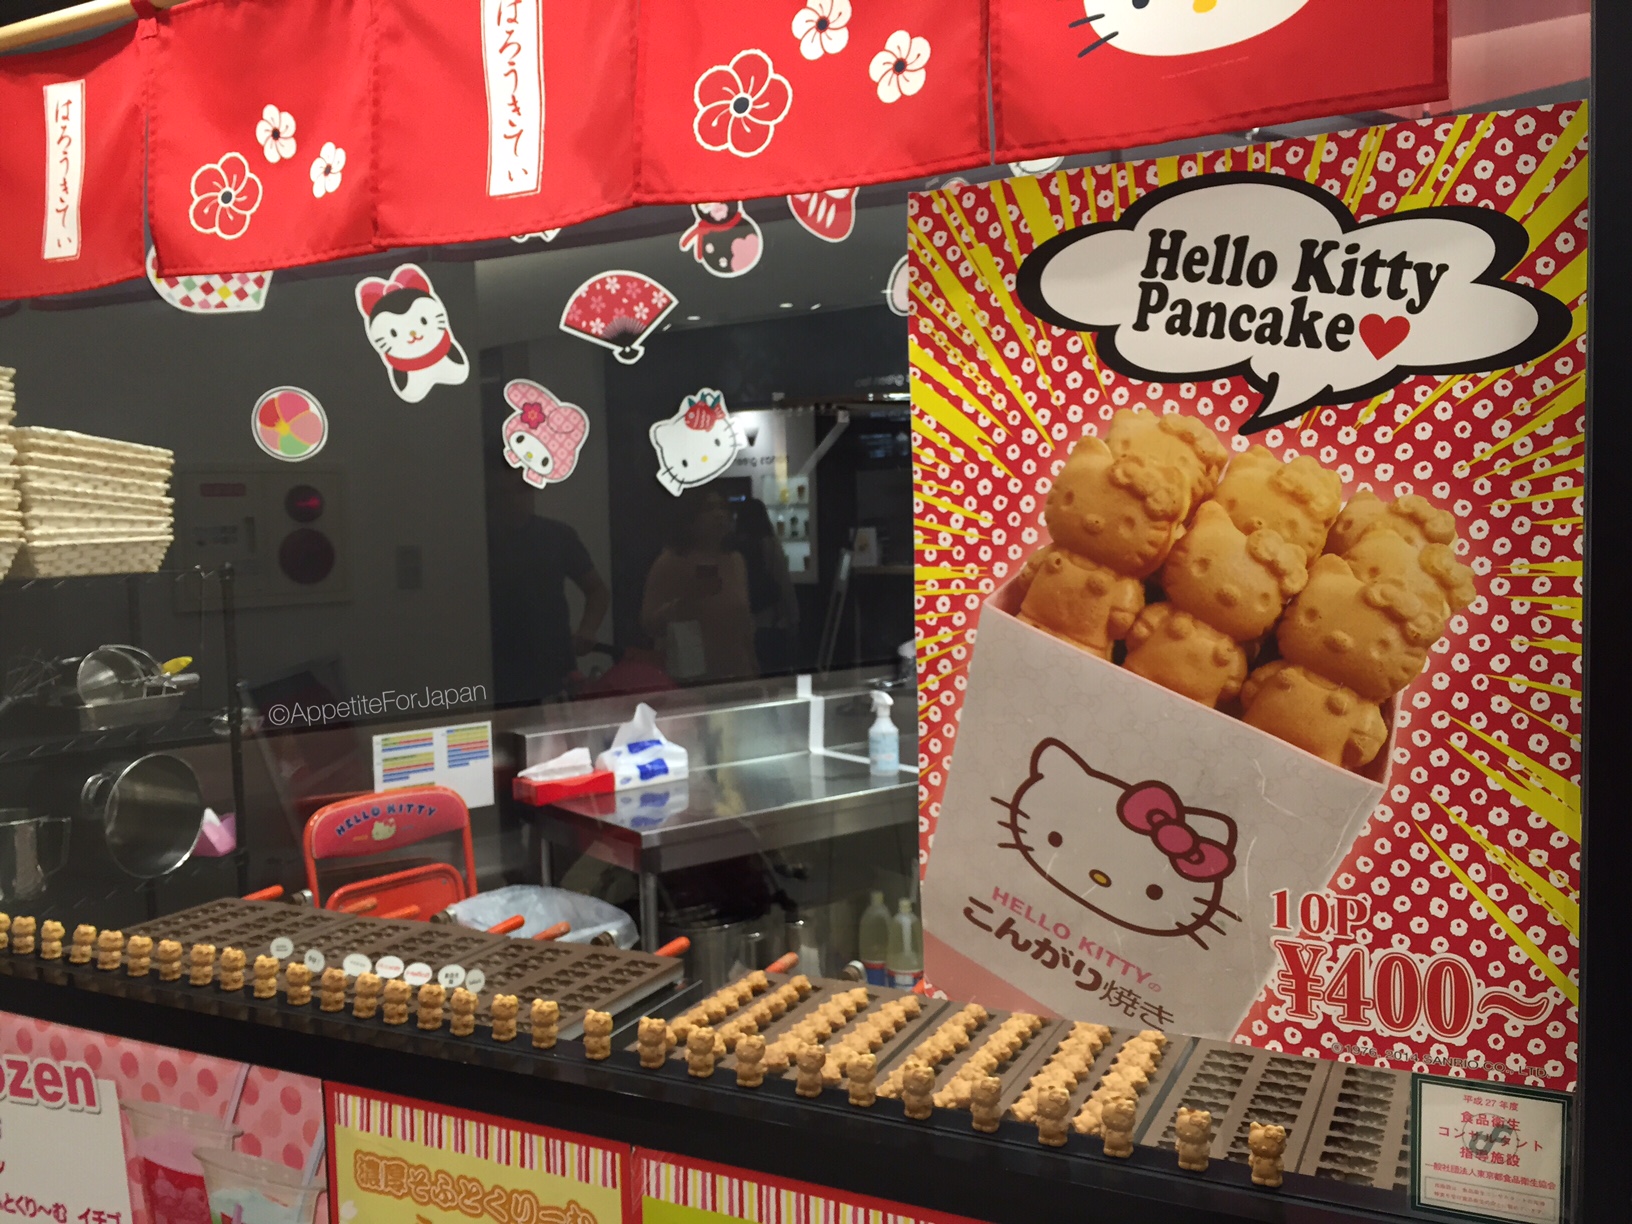 Hello Kitty store mini pancakes